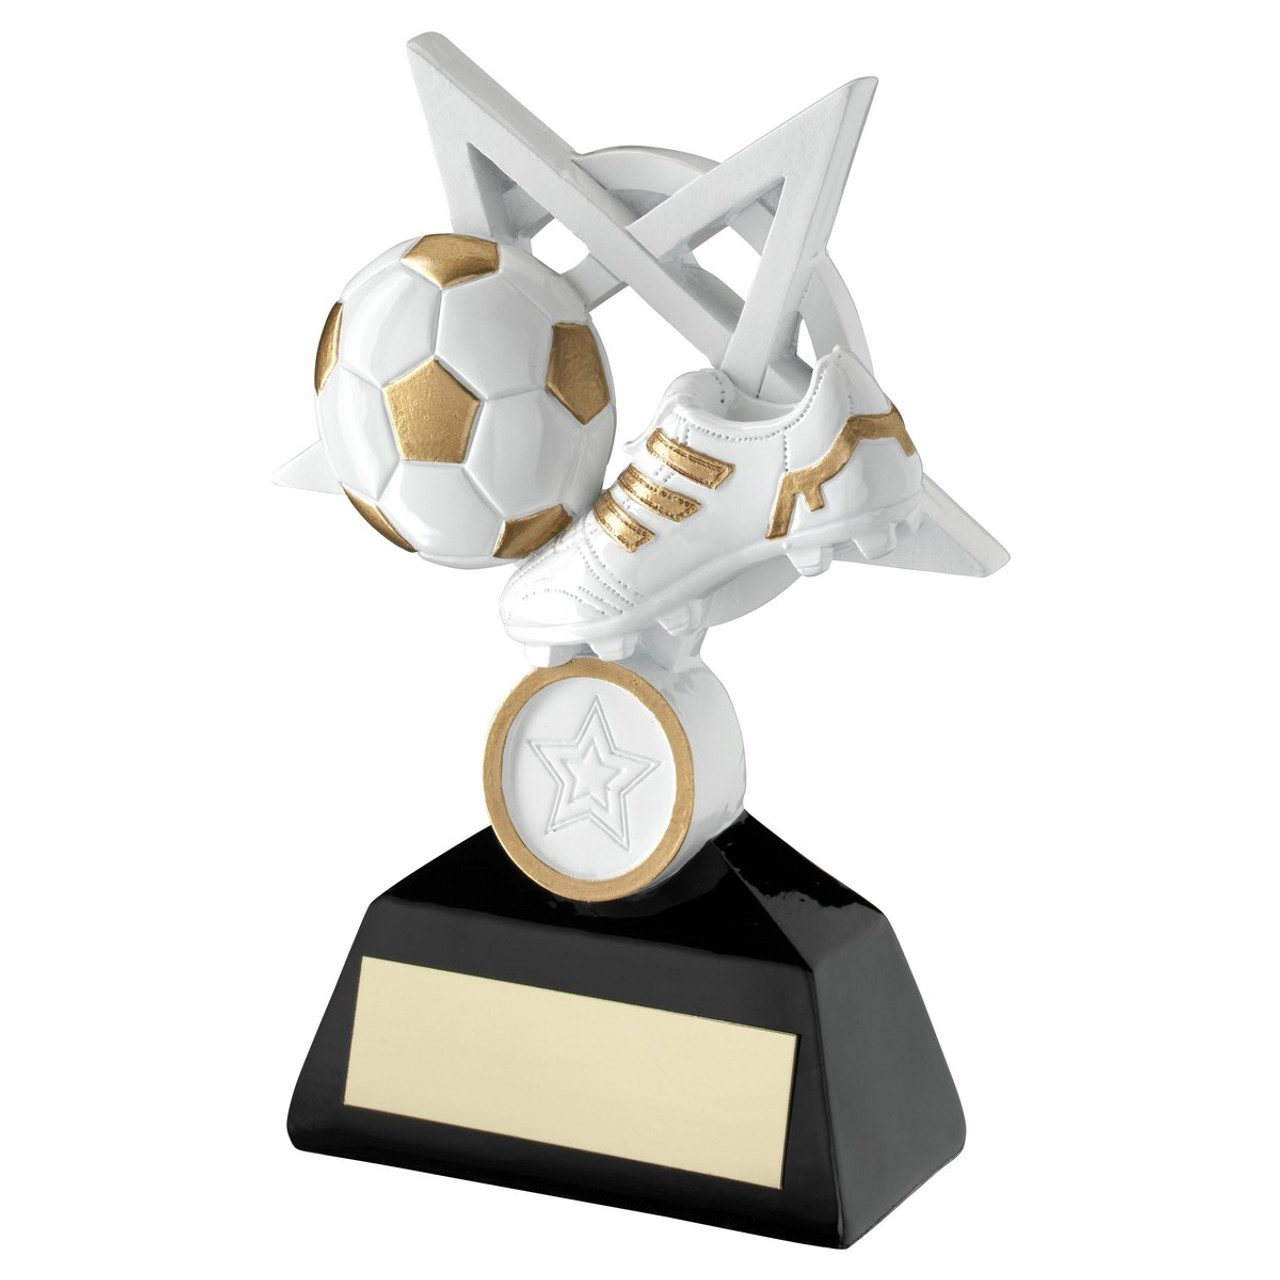 White & Gold Football Resin Star Award